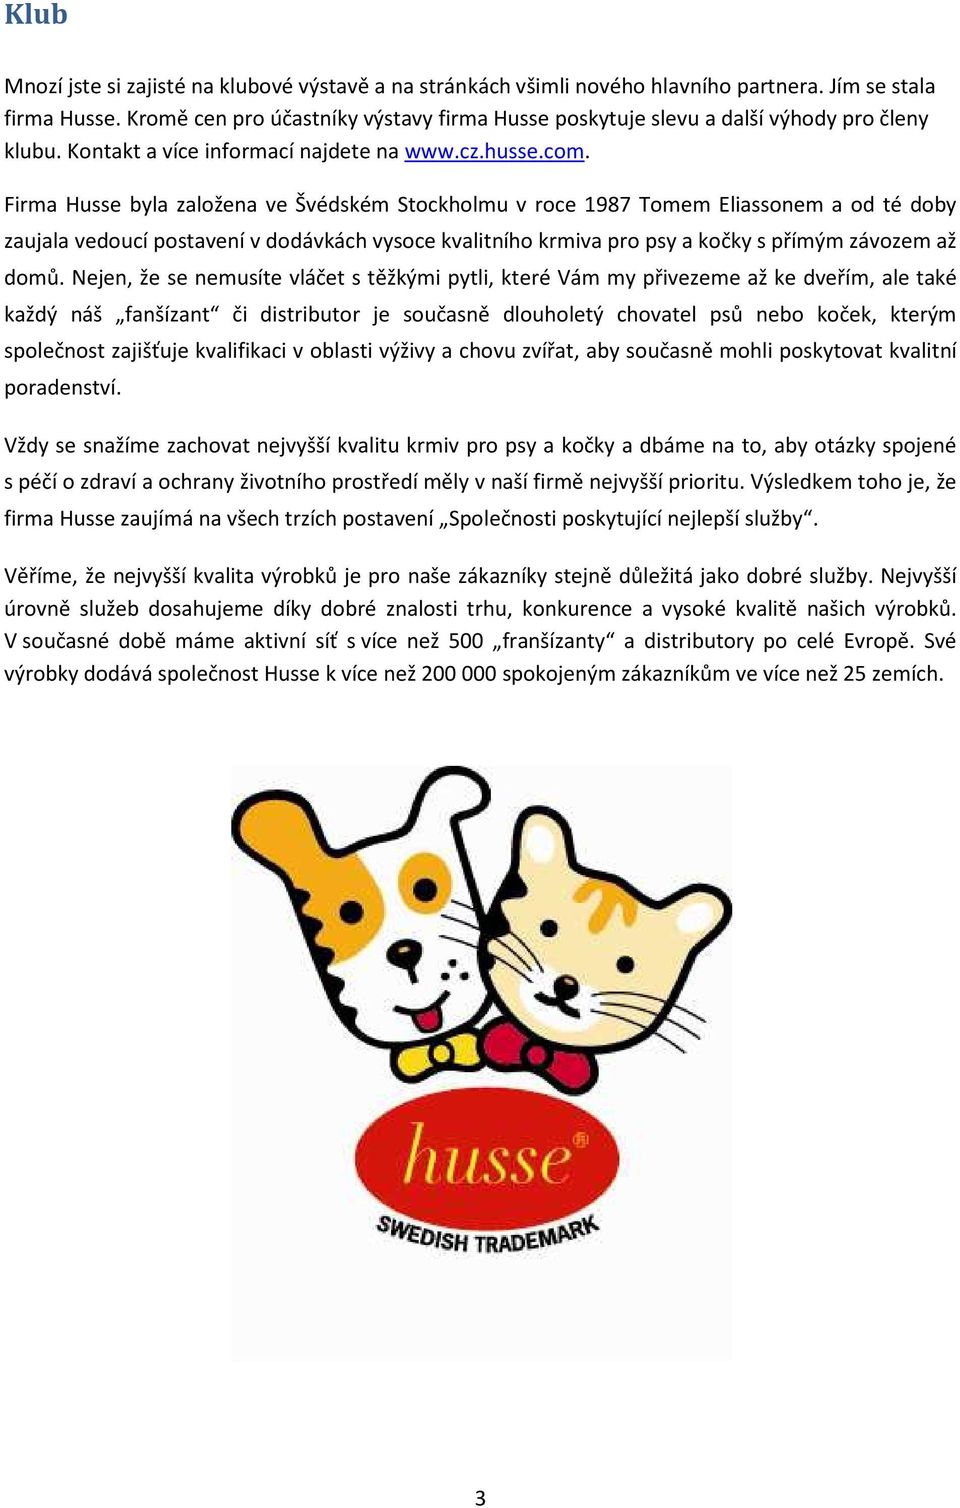 Firma Husse byla založena ve Švédském Stockholmu v roce 1987 Tomem Eliassonem a od té doby zaujala vedoucí postavení v dodávkách vysoce kvalitního krmiva pro psy a kočky s přímým závozem až domů.